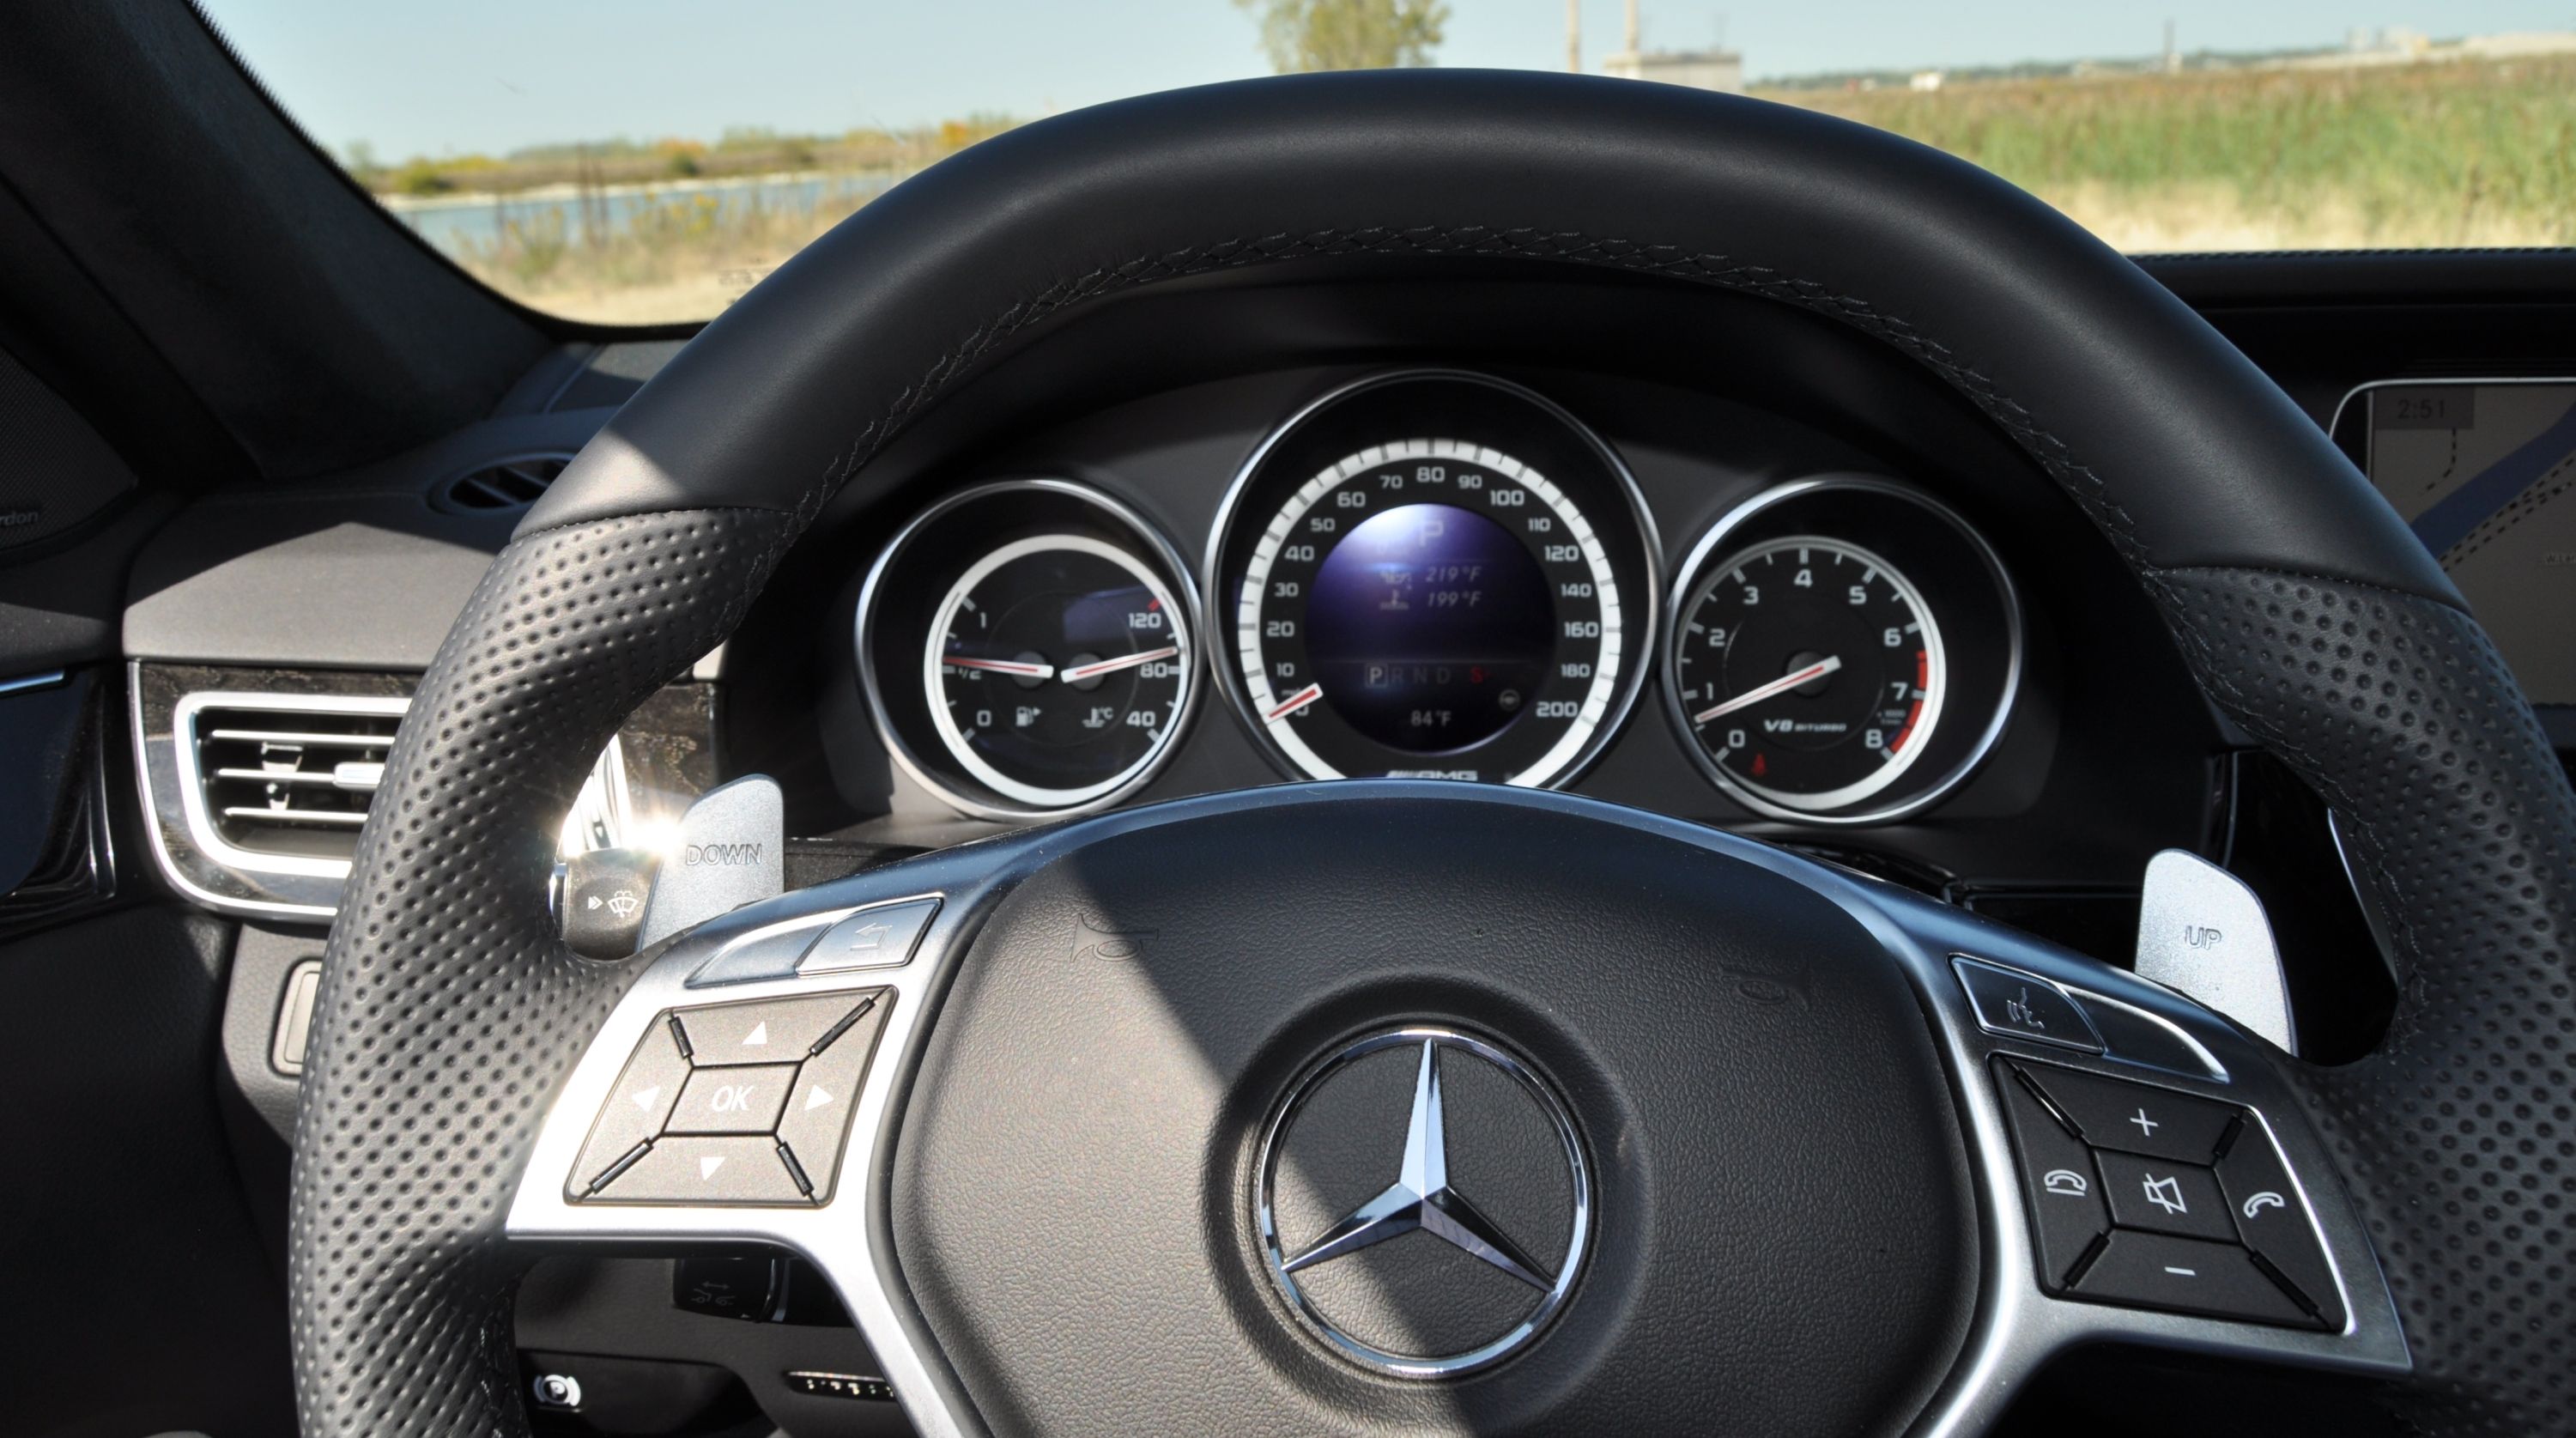 2014 Mercedes-Benz E63 AMG S-Model - Driven